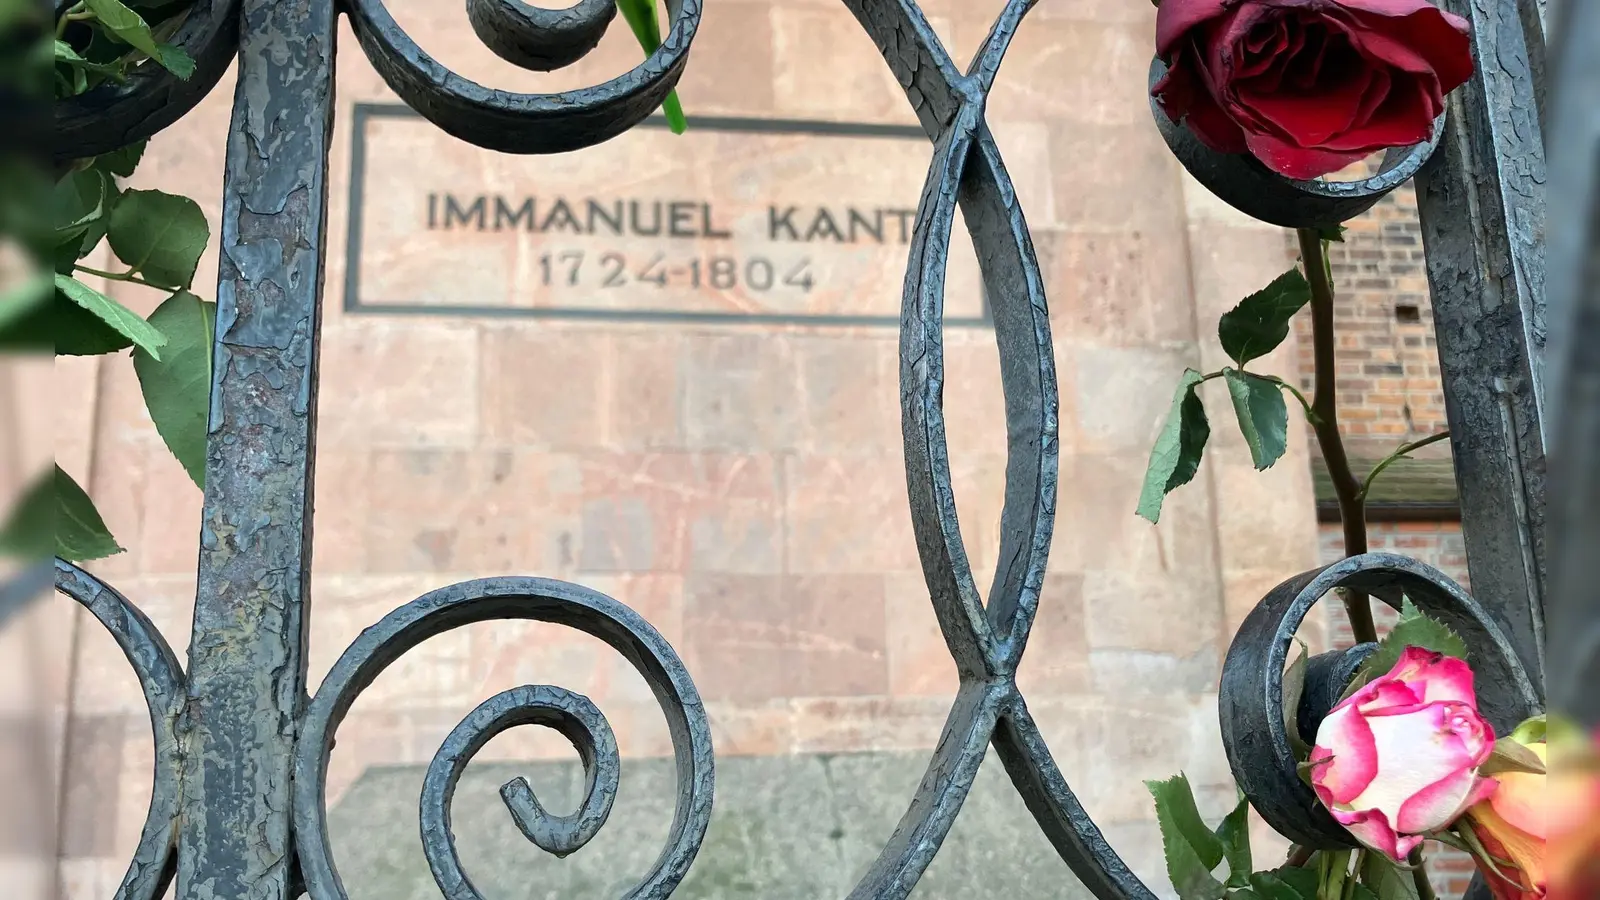 Blumen schmücken die Grabstelle von Immanuel Kant in Kaliningrad. (Foto: Andre Ballin/dpa)